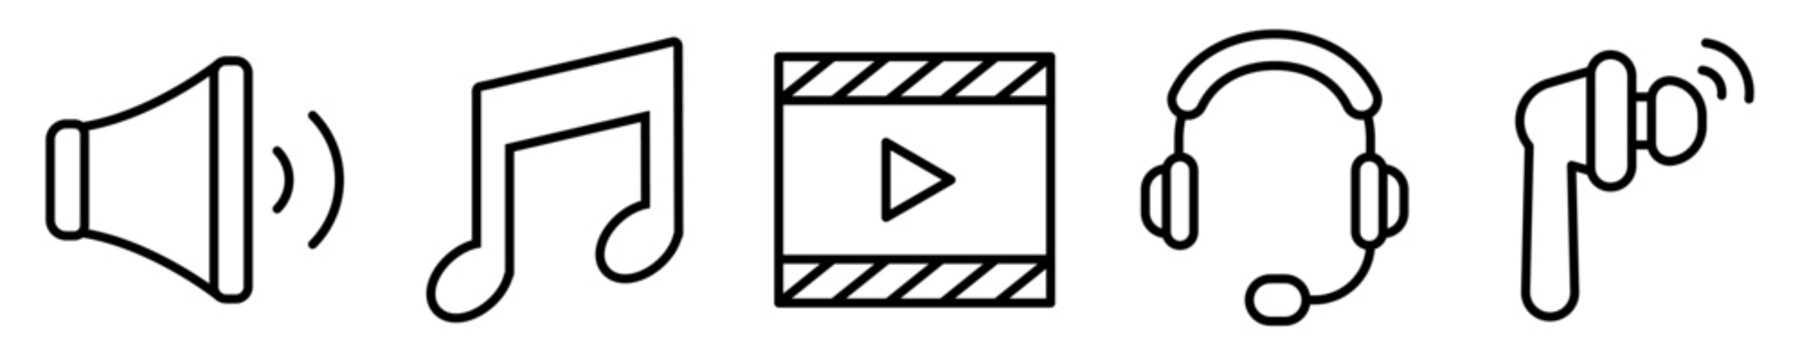 Conjunto de iconos de audio y video. Concepto de multimedia. Dispositivos tecnológicos de audio y video. Volumen, música. Ilustración vectorial